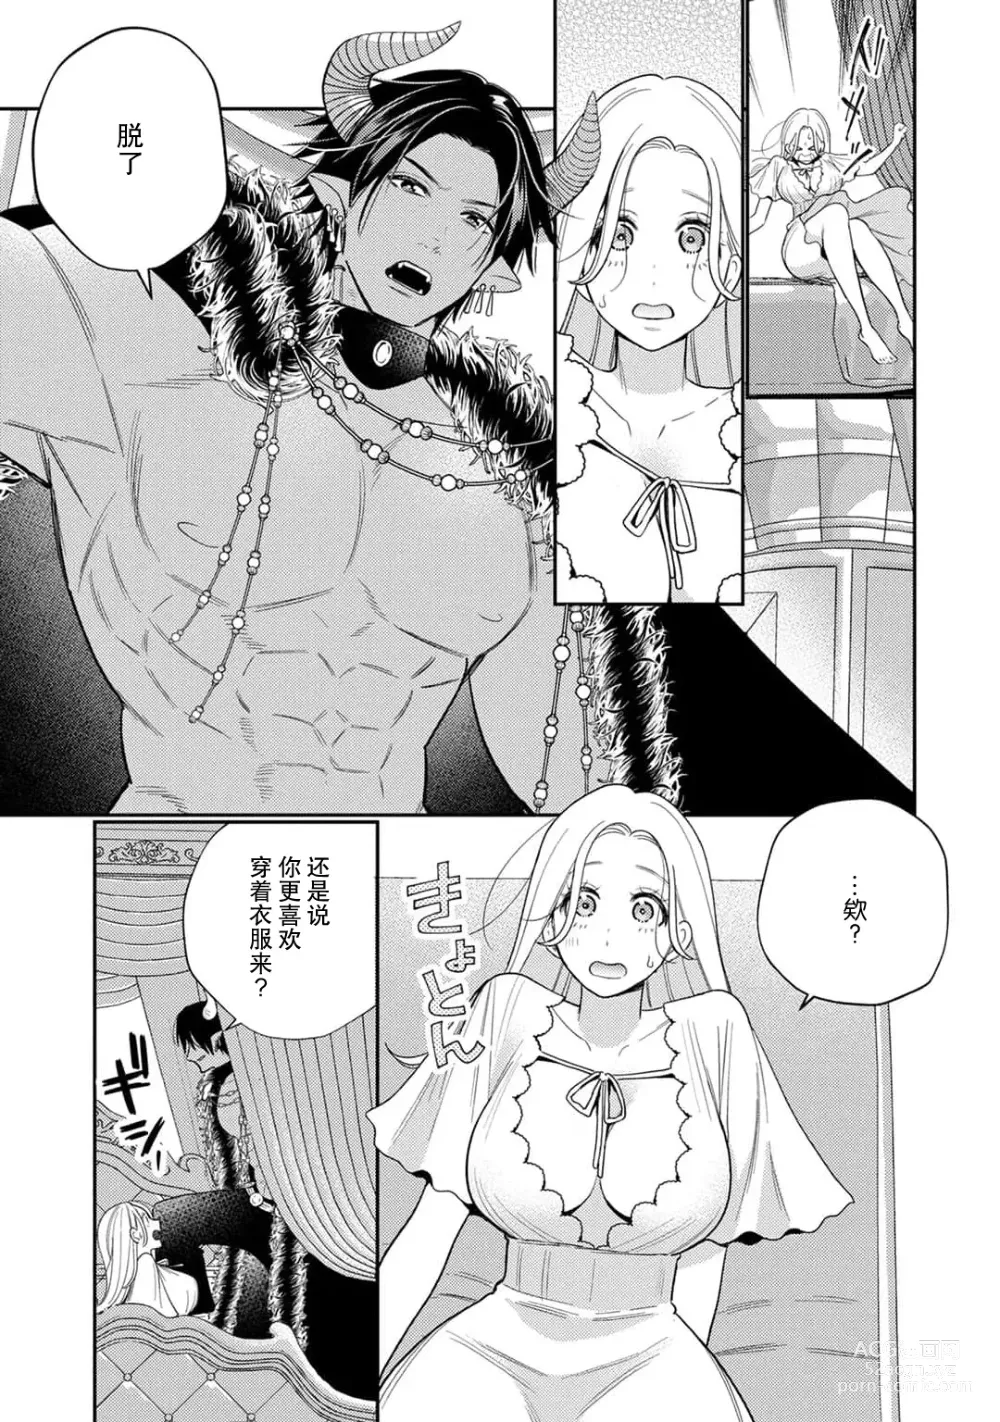 Page 9 of manga 转生成为恶役大小姐，迎接不H就会死的命运~与敌国国王的笼络联姻~ 1-5